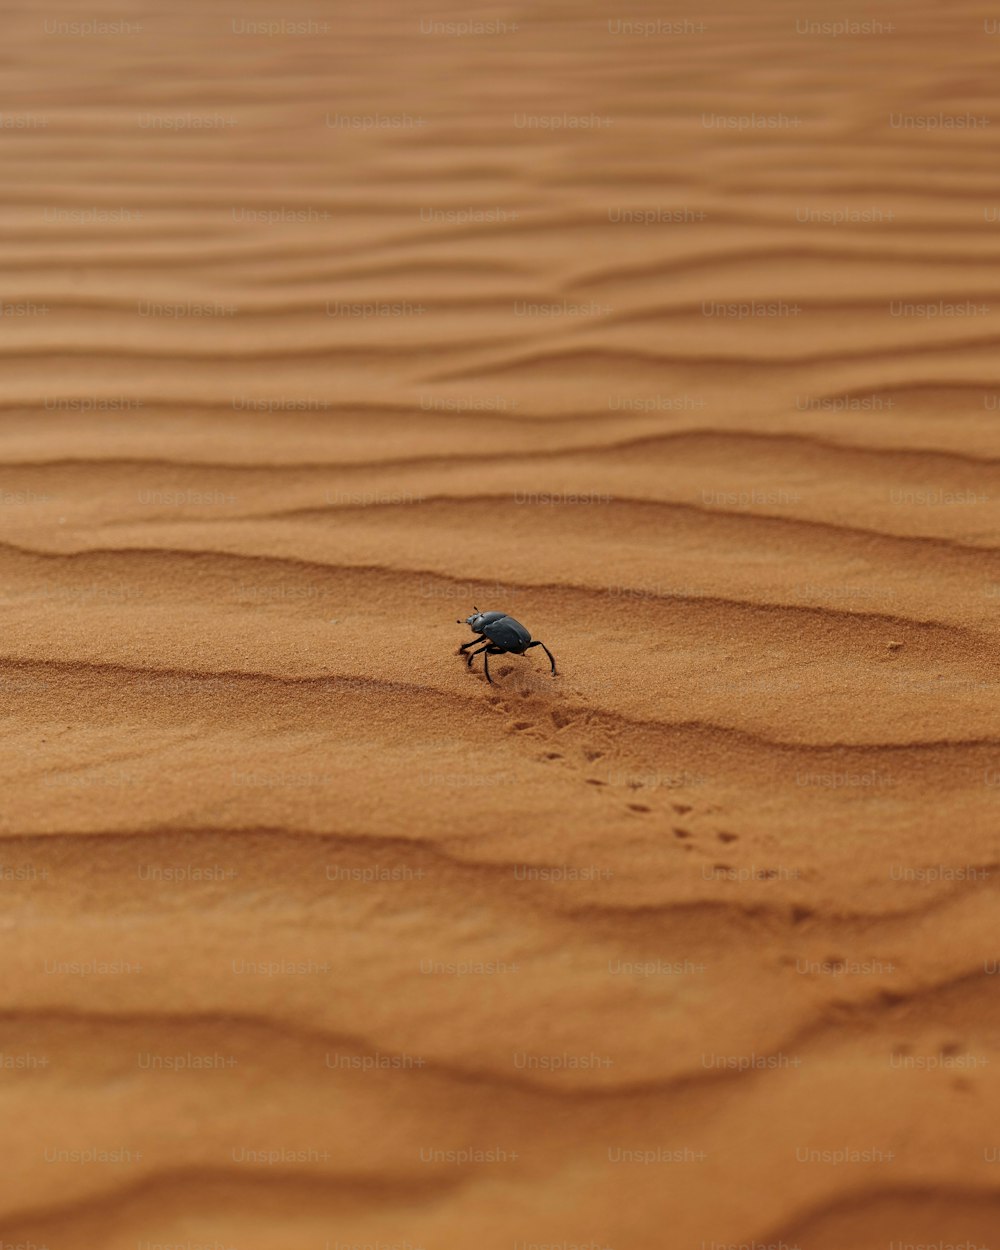 砂漠の砂地を這う虫